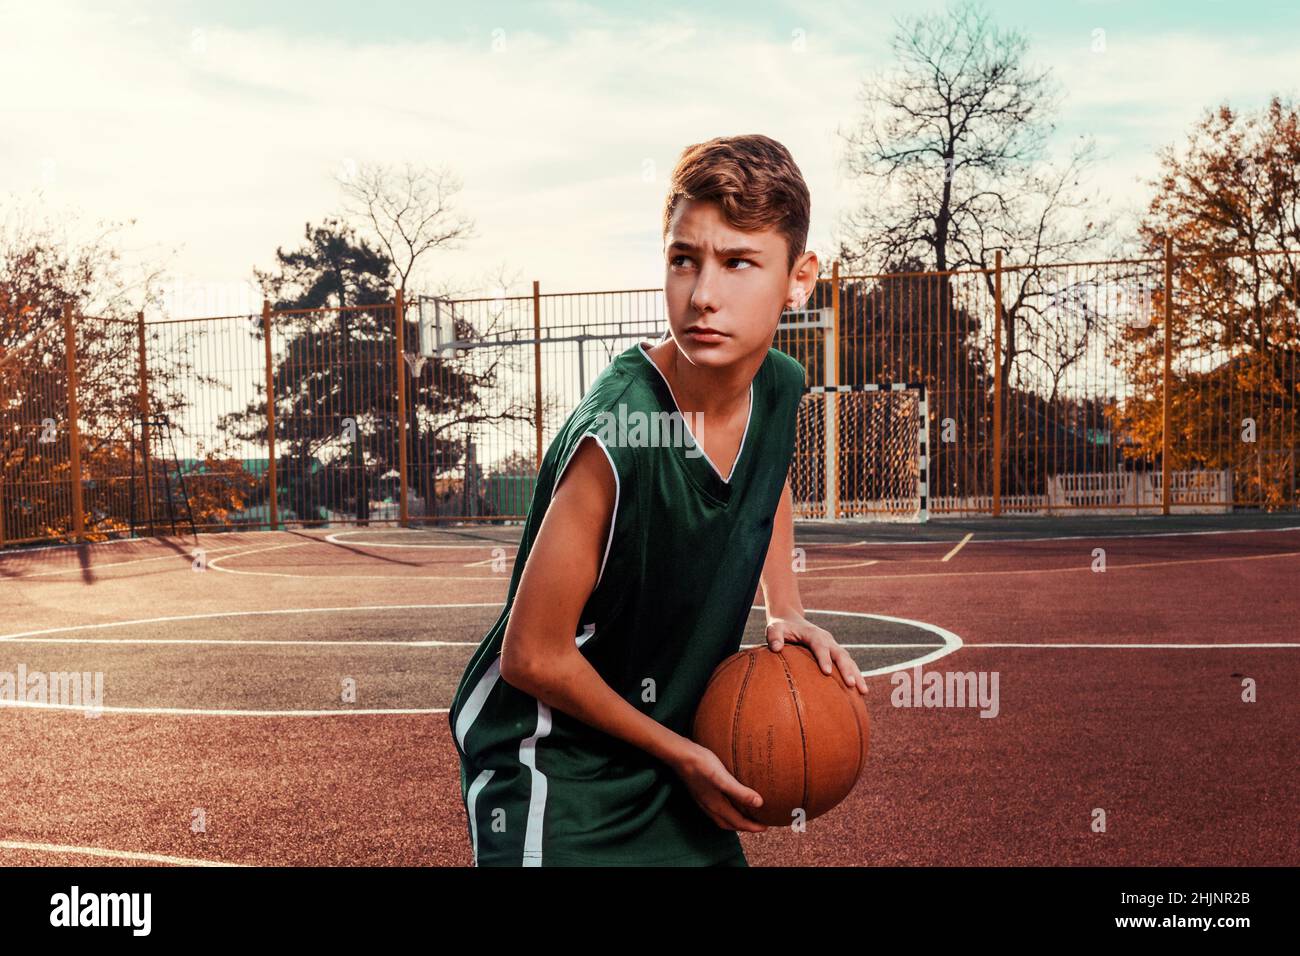 Sports et basket-ball.Un jeune adolescent dans un survêtement vert pose  avec un basket-ball dans ses mains et est prêt à lancer.En arrière-plan, un  basketba Photo Stock - Alamy